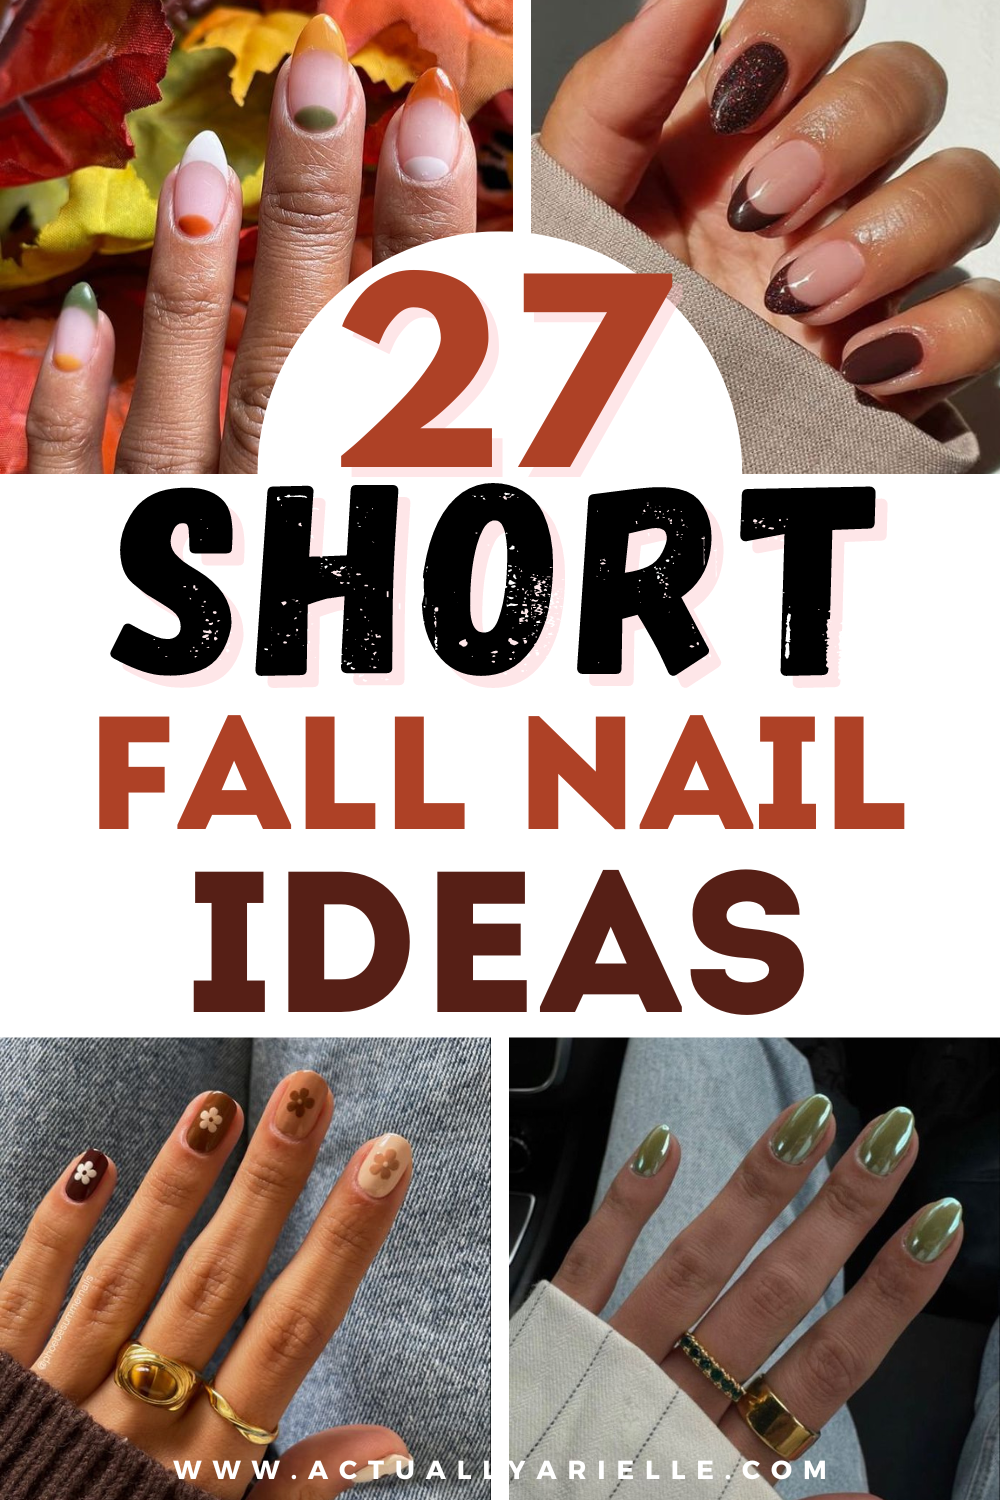 20 Spring Nail Designs For Short Nails